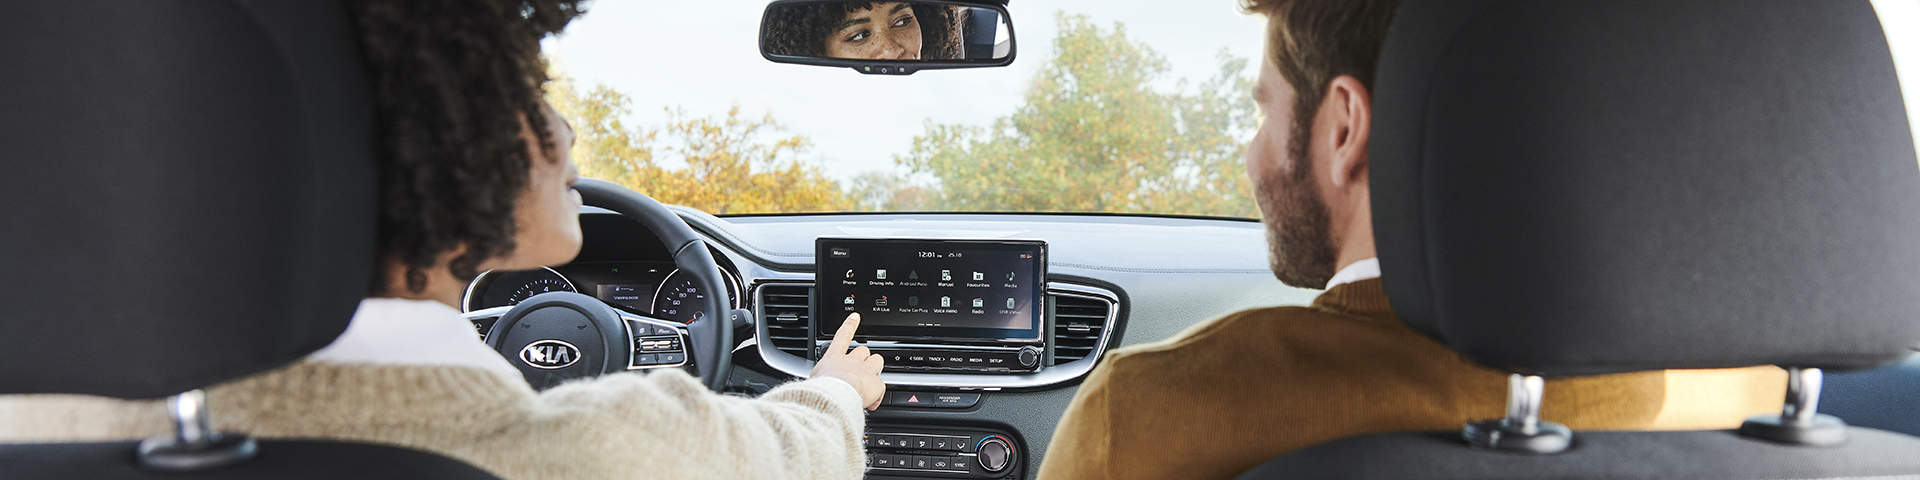 Et par kører en Kia og bruger Kias tjenester på touchscreen.